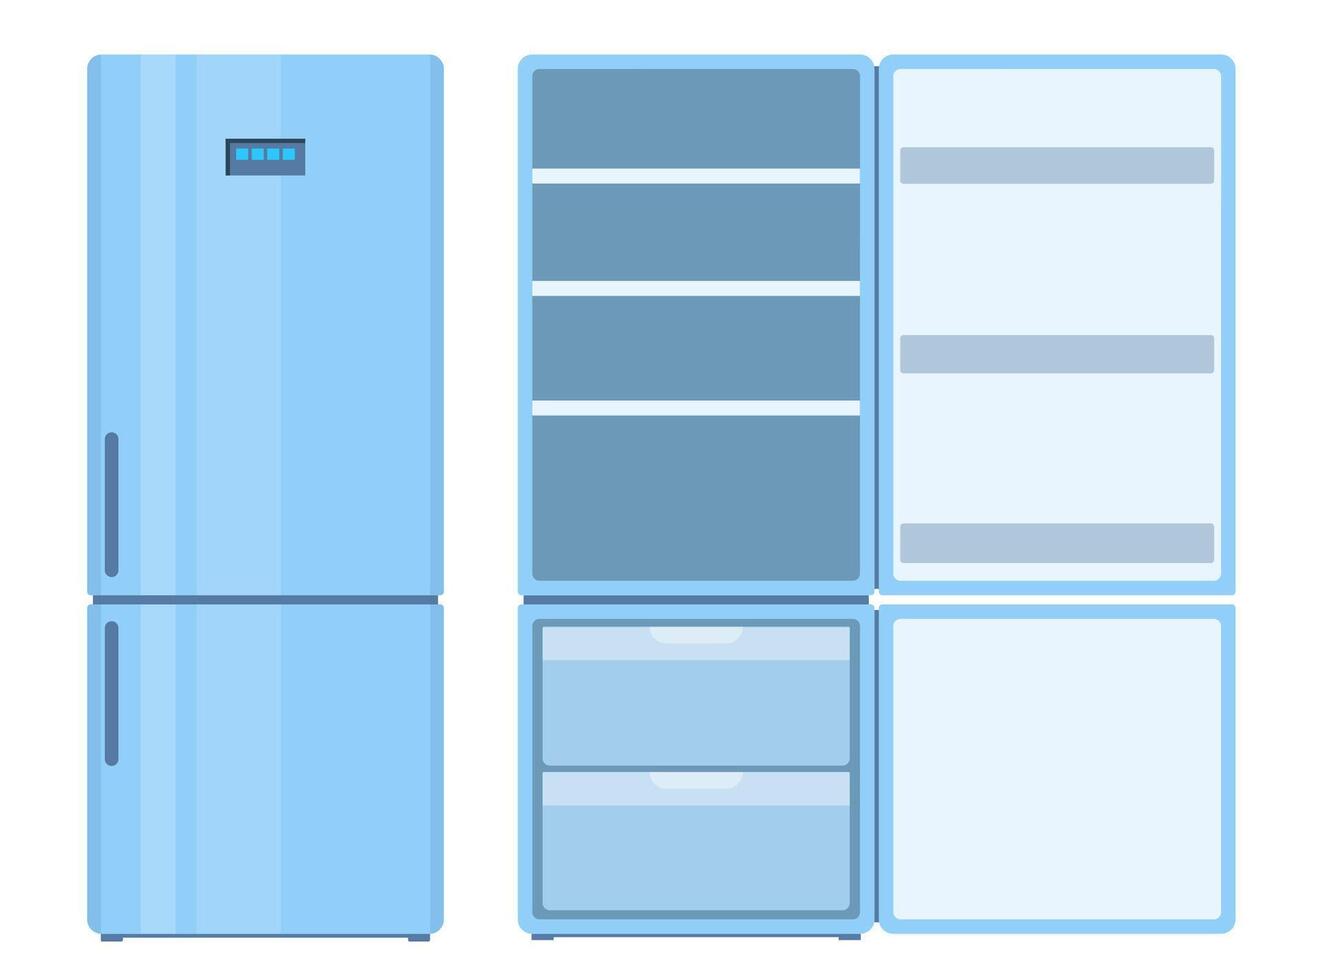 geladeira. fechadas e aberto esvaziar frigorífico. azul geladeira para Comida armazenar. vetor ilustração.